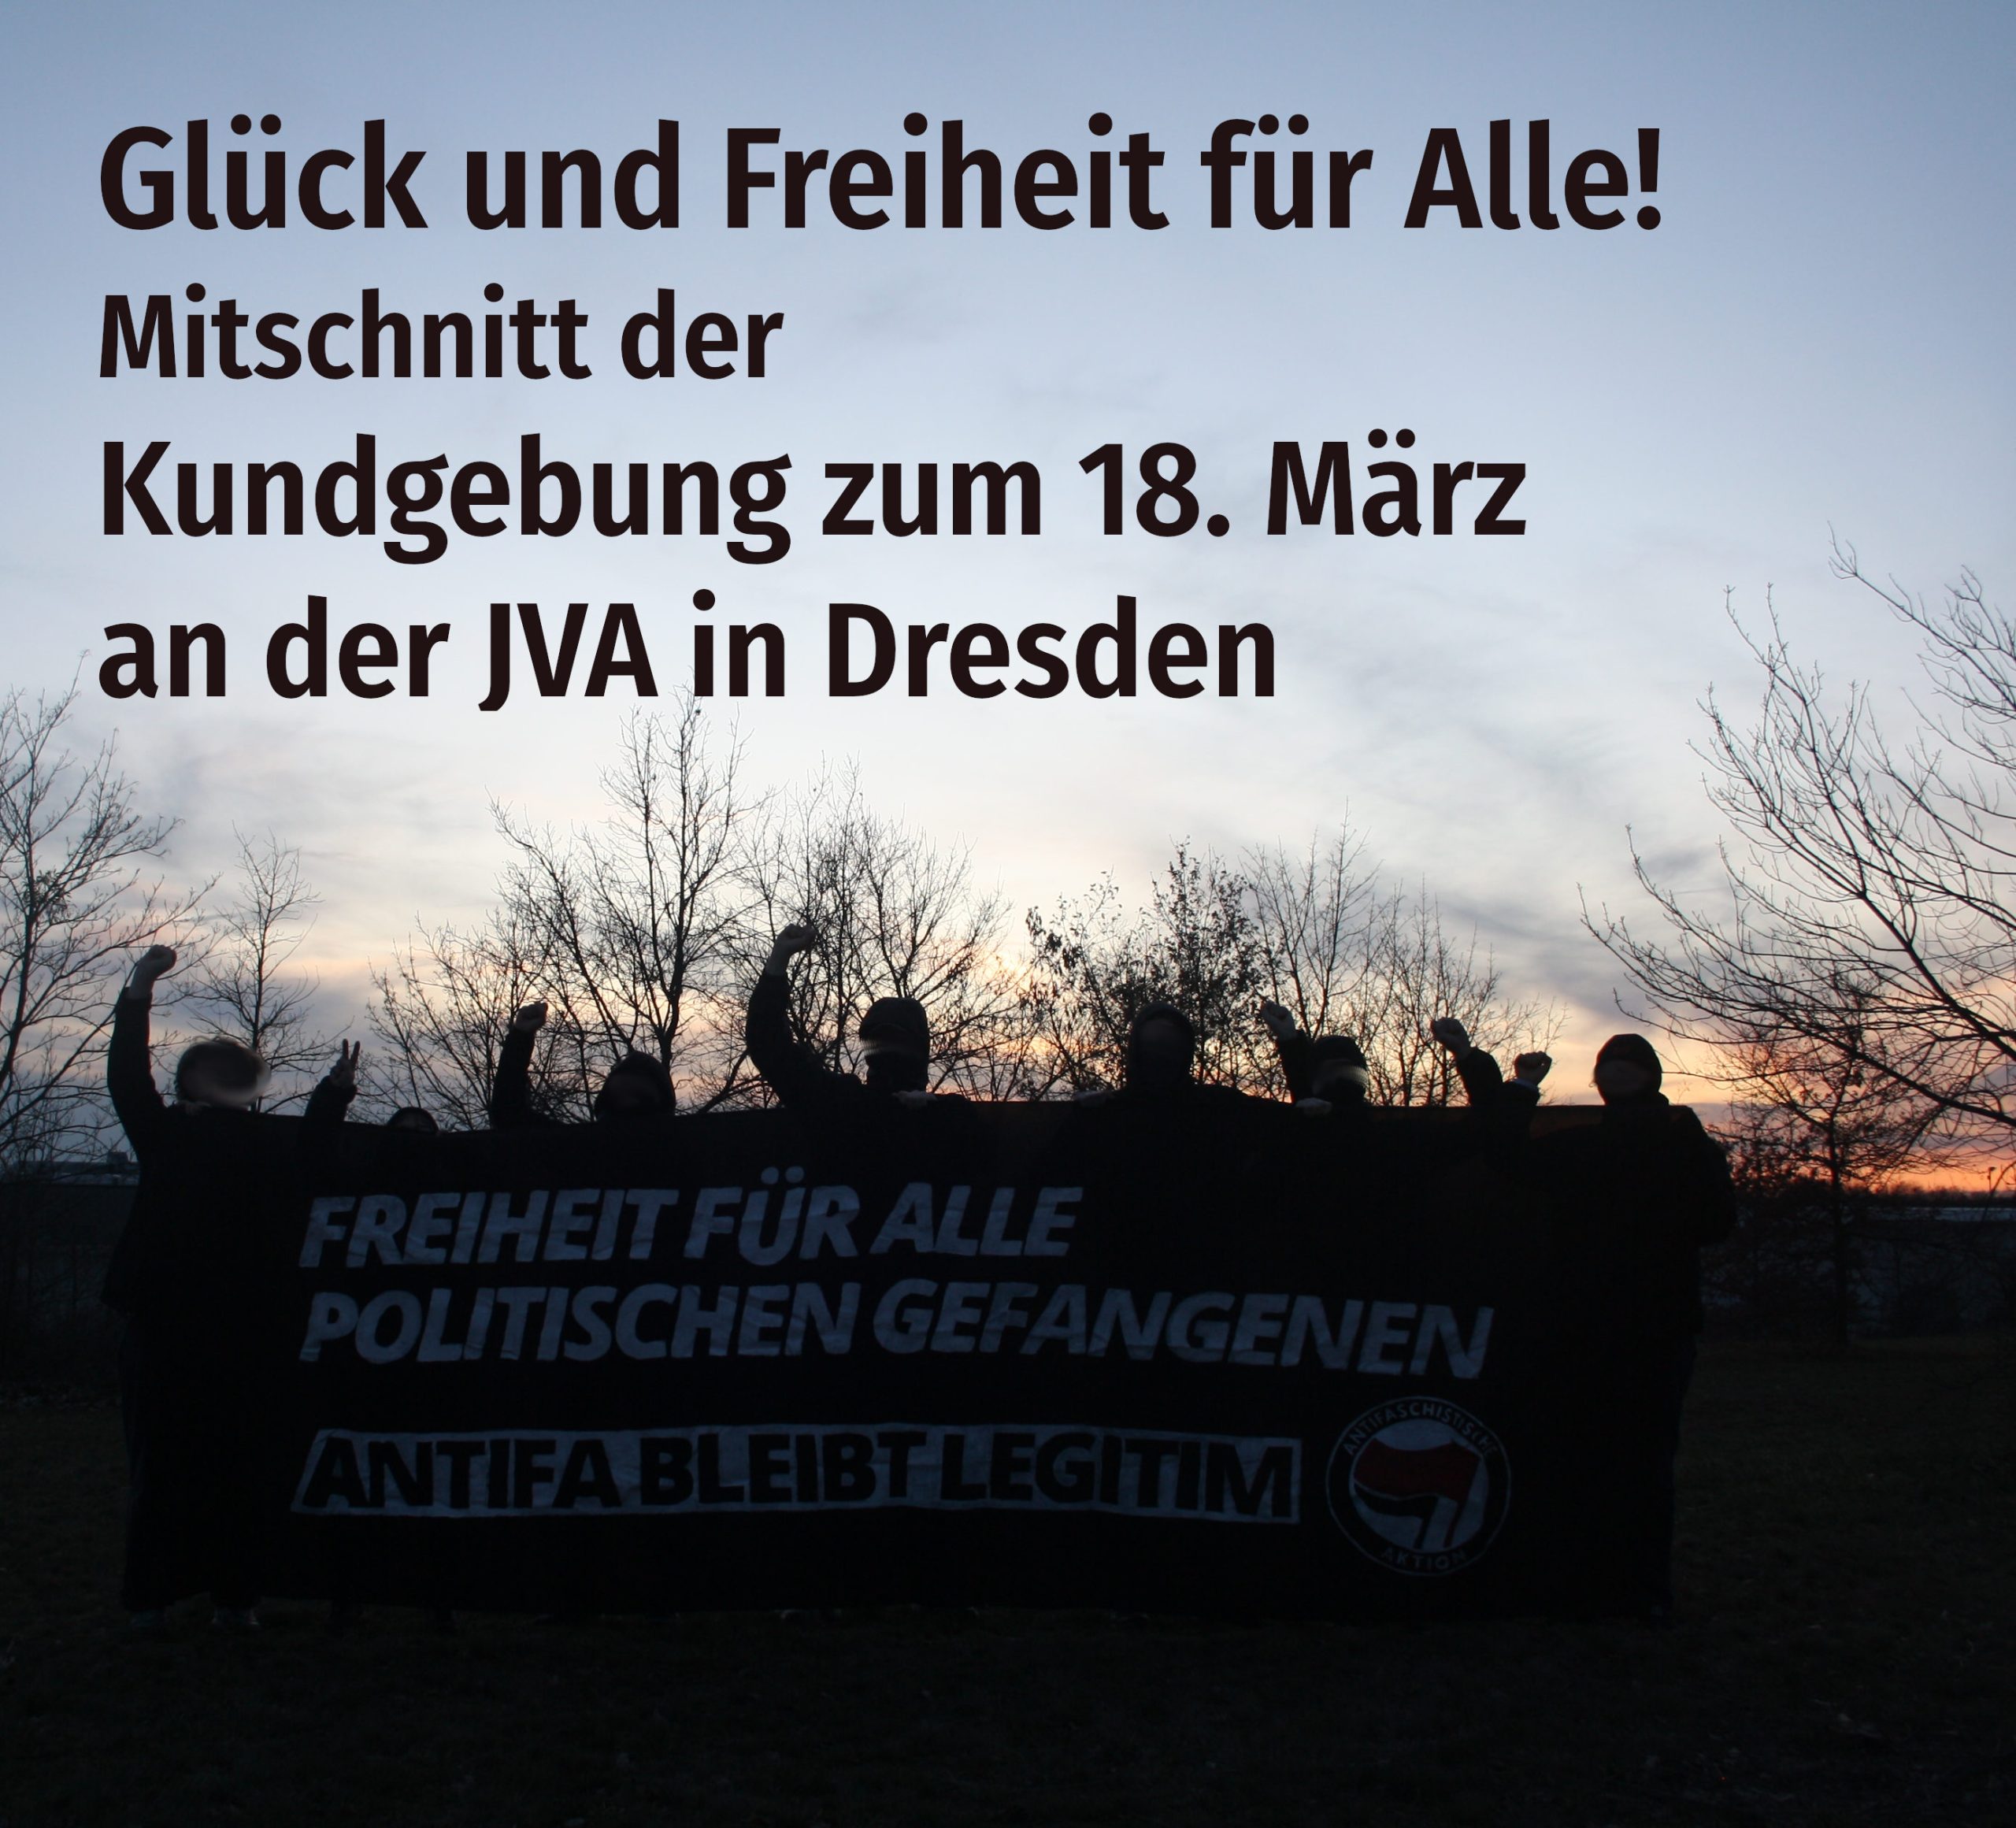 Kundgebung zum 18. März an der JVA in Dresden (Mitschnitt)